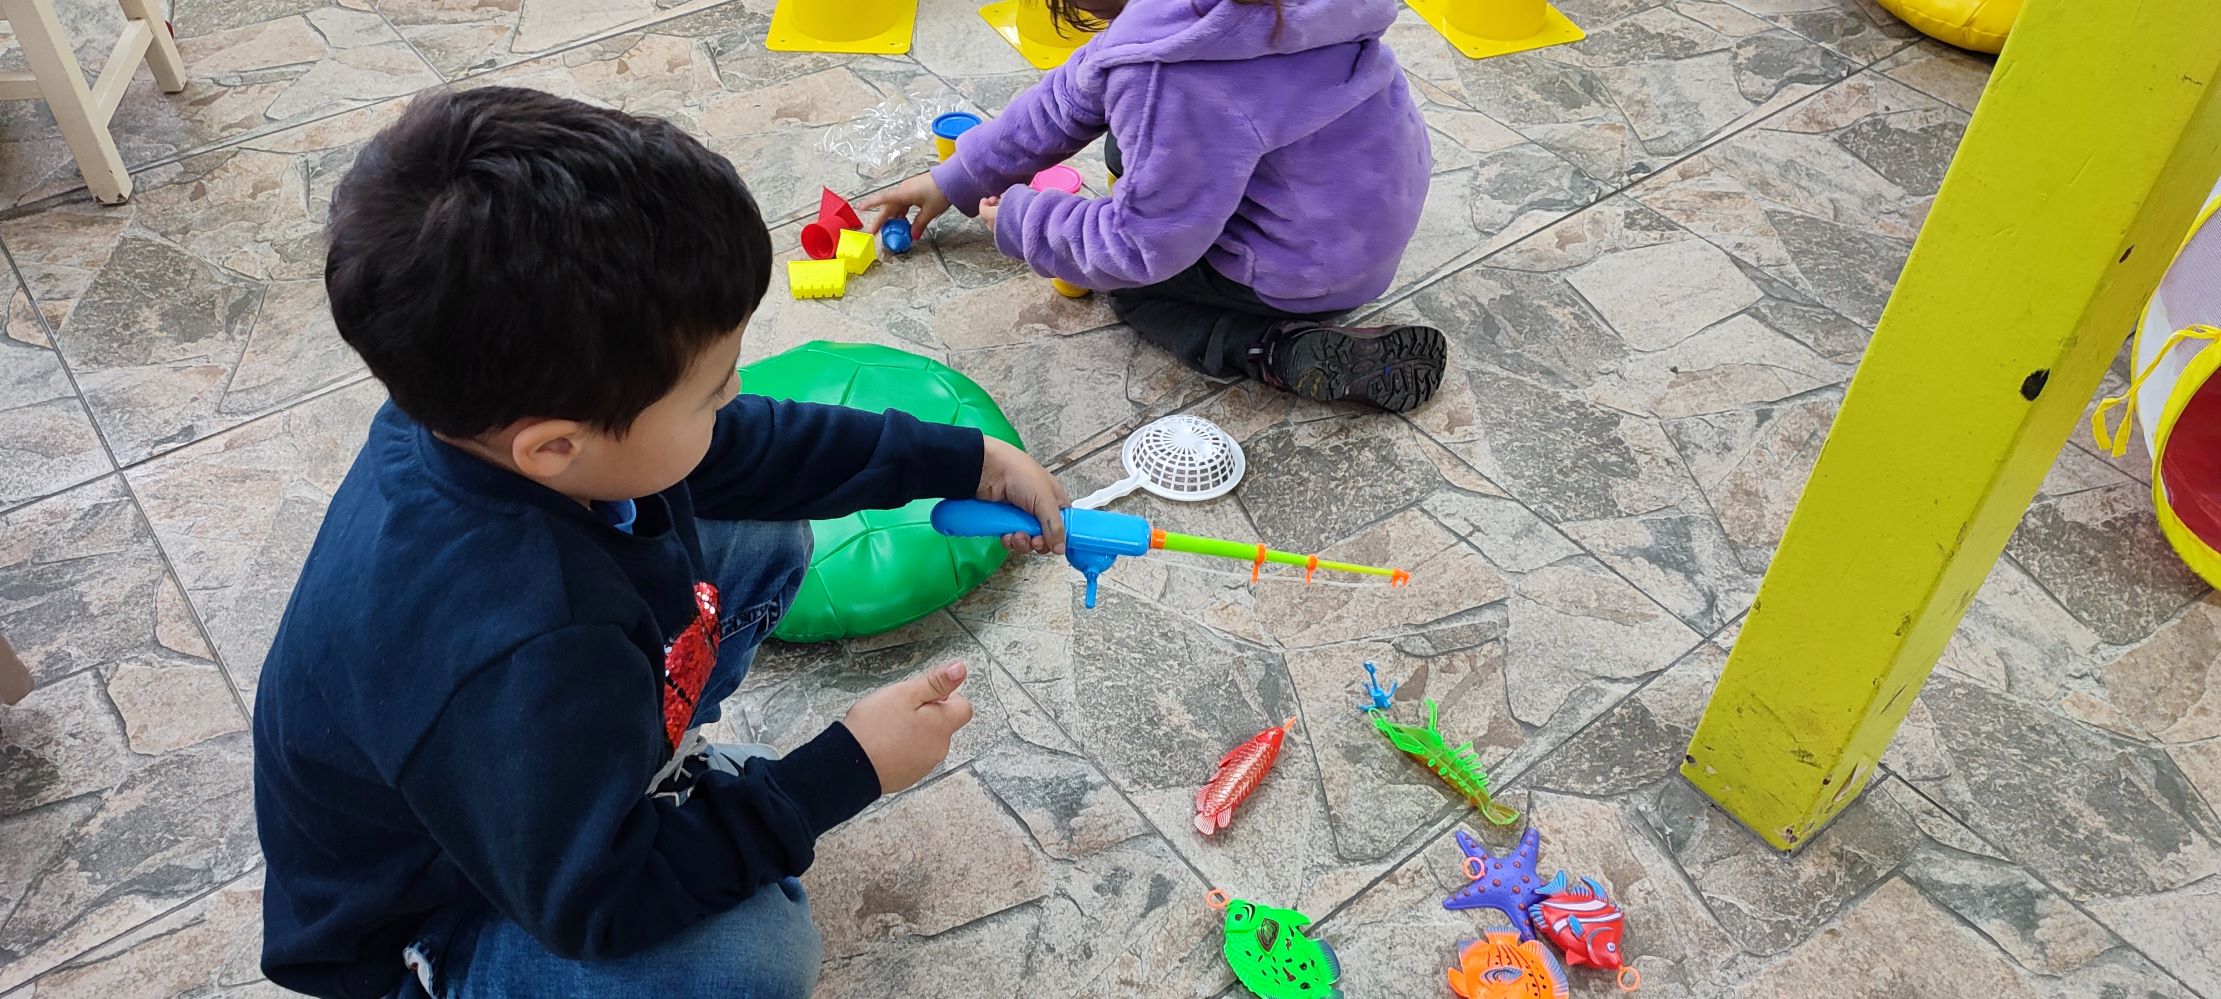 Niños y adolescentes se unieron en divertidas actividades organizadas por la Municipalidad de Punta Arenas | Sector Cardenal Silva Henríquez y alrededores